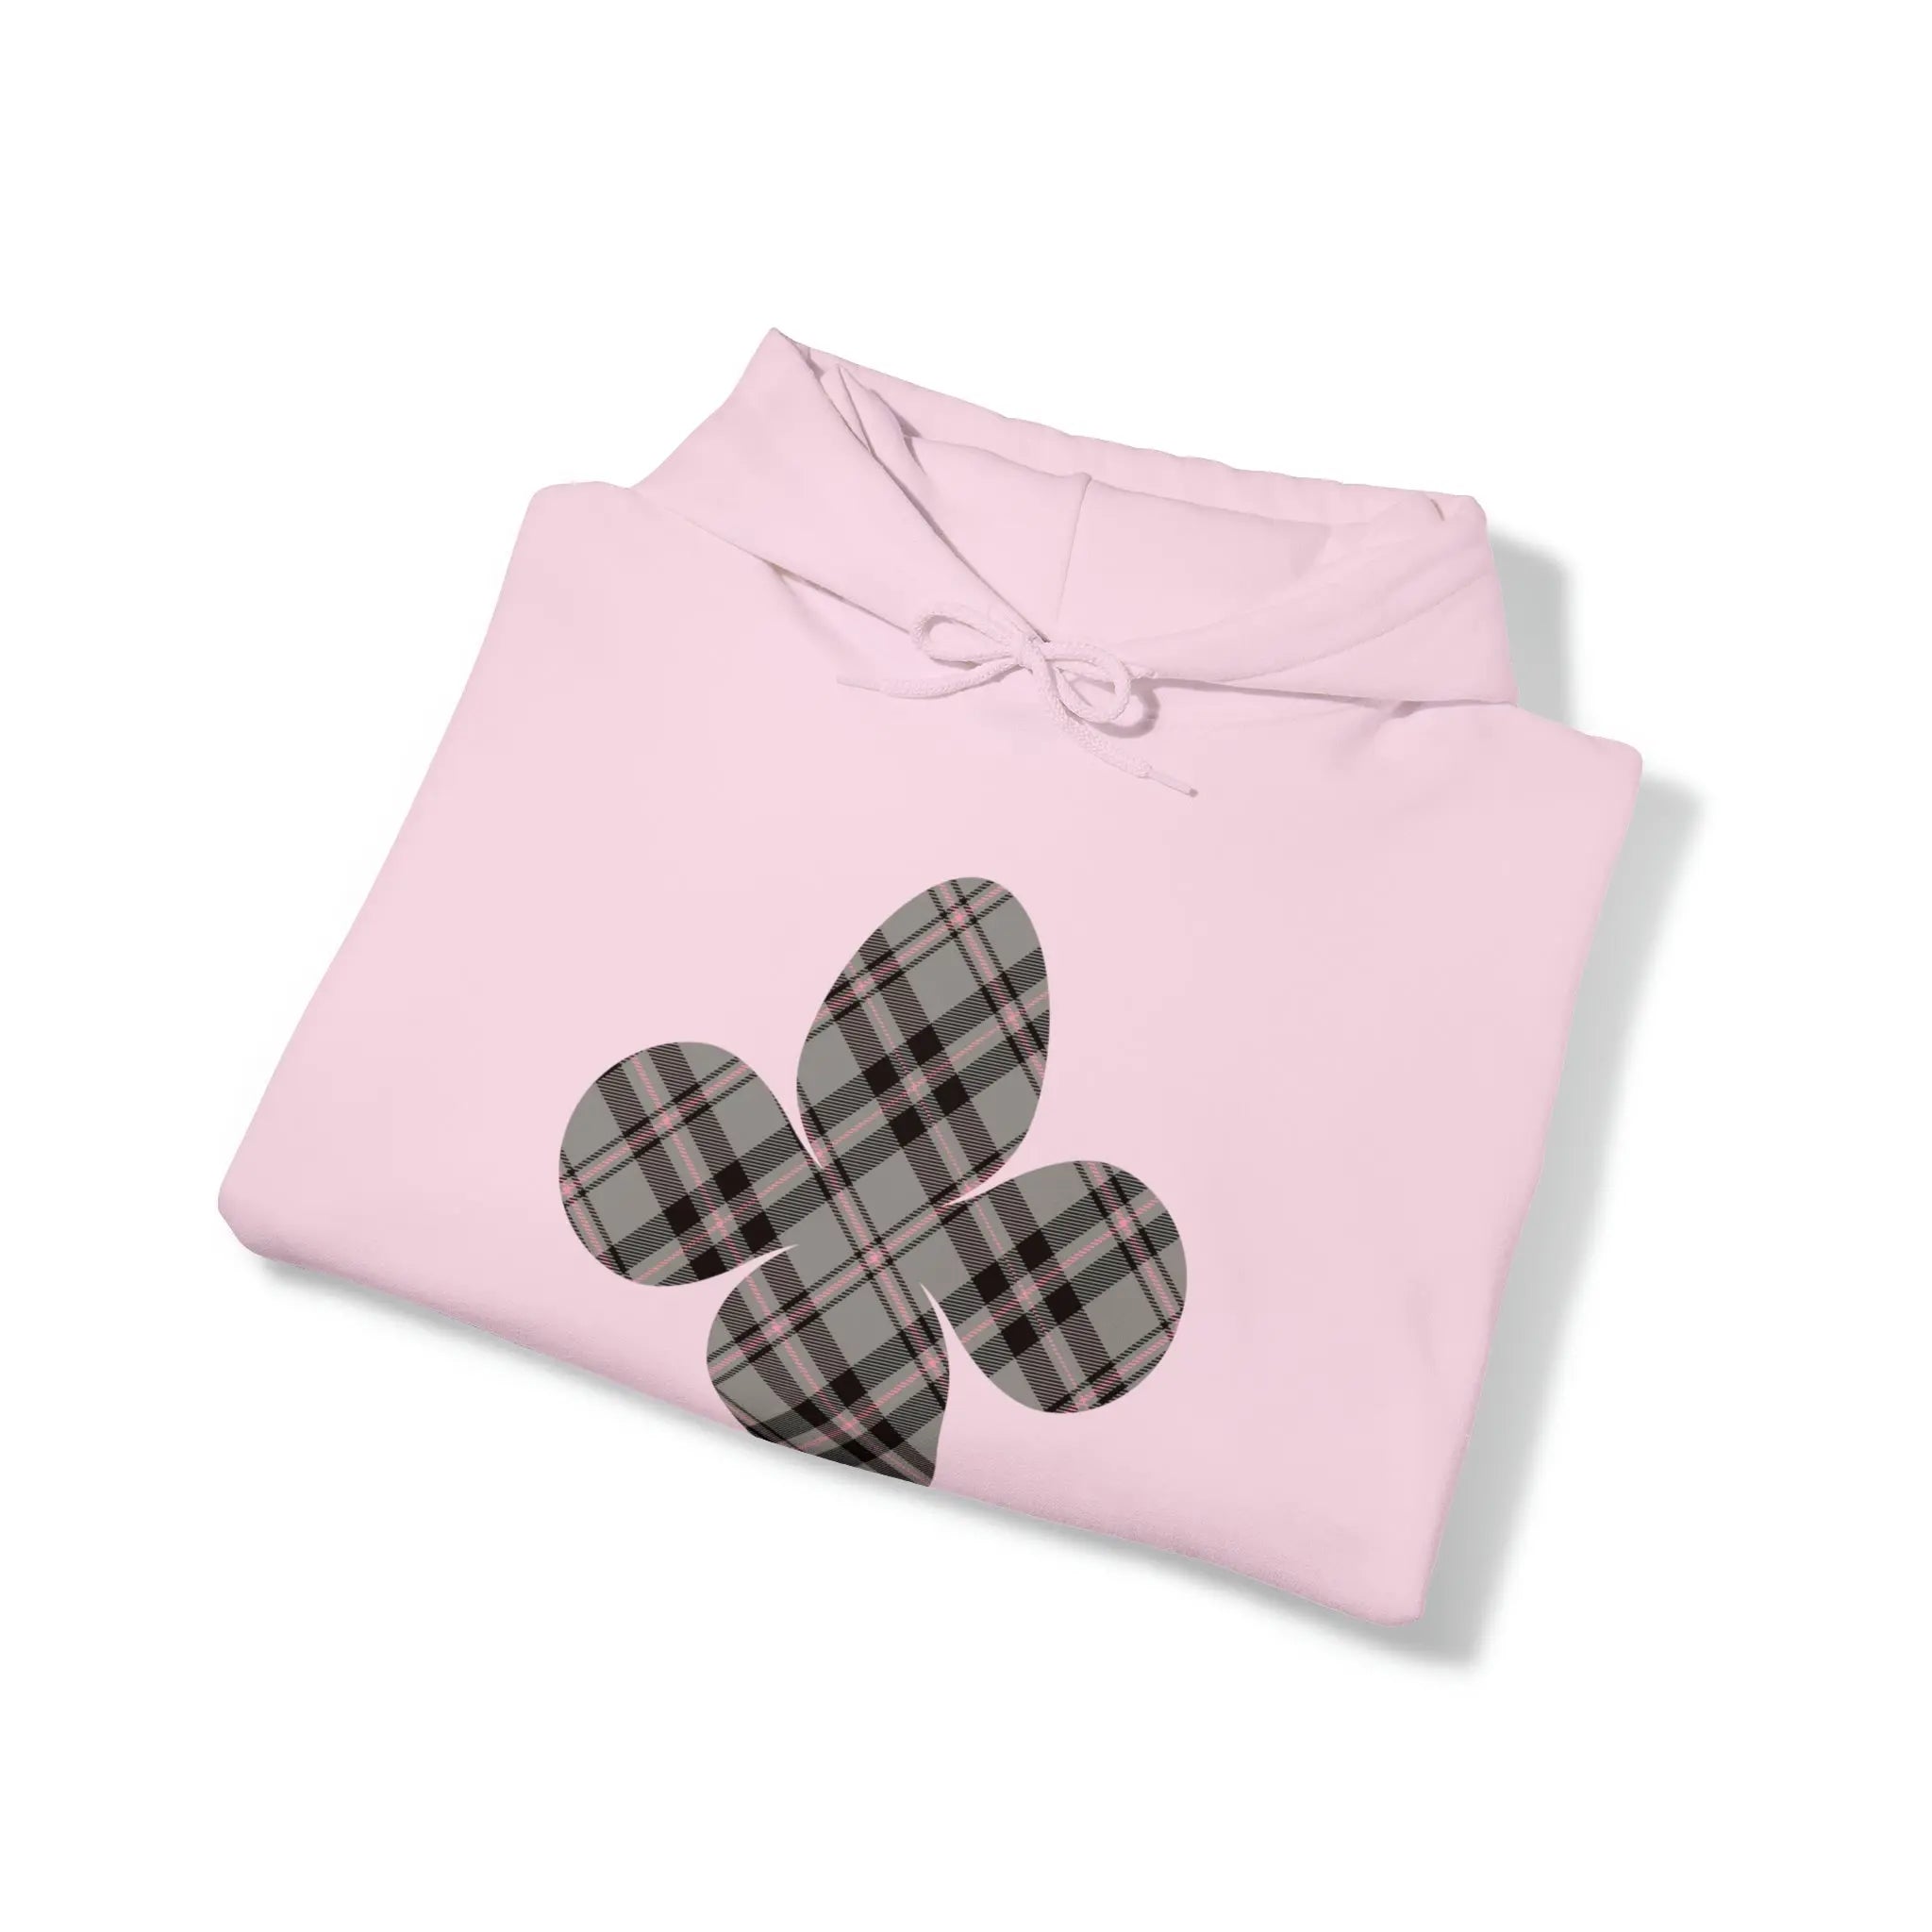  Pink Plaid Pattern Flower with Sleeve Print Unisex Heavy Blend Hooded Sweatshirt Hoodie